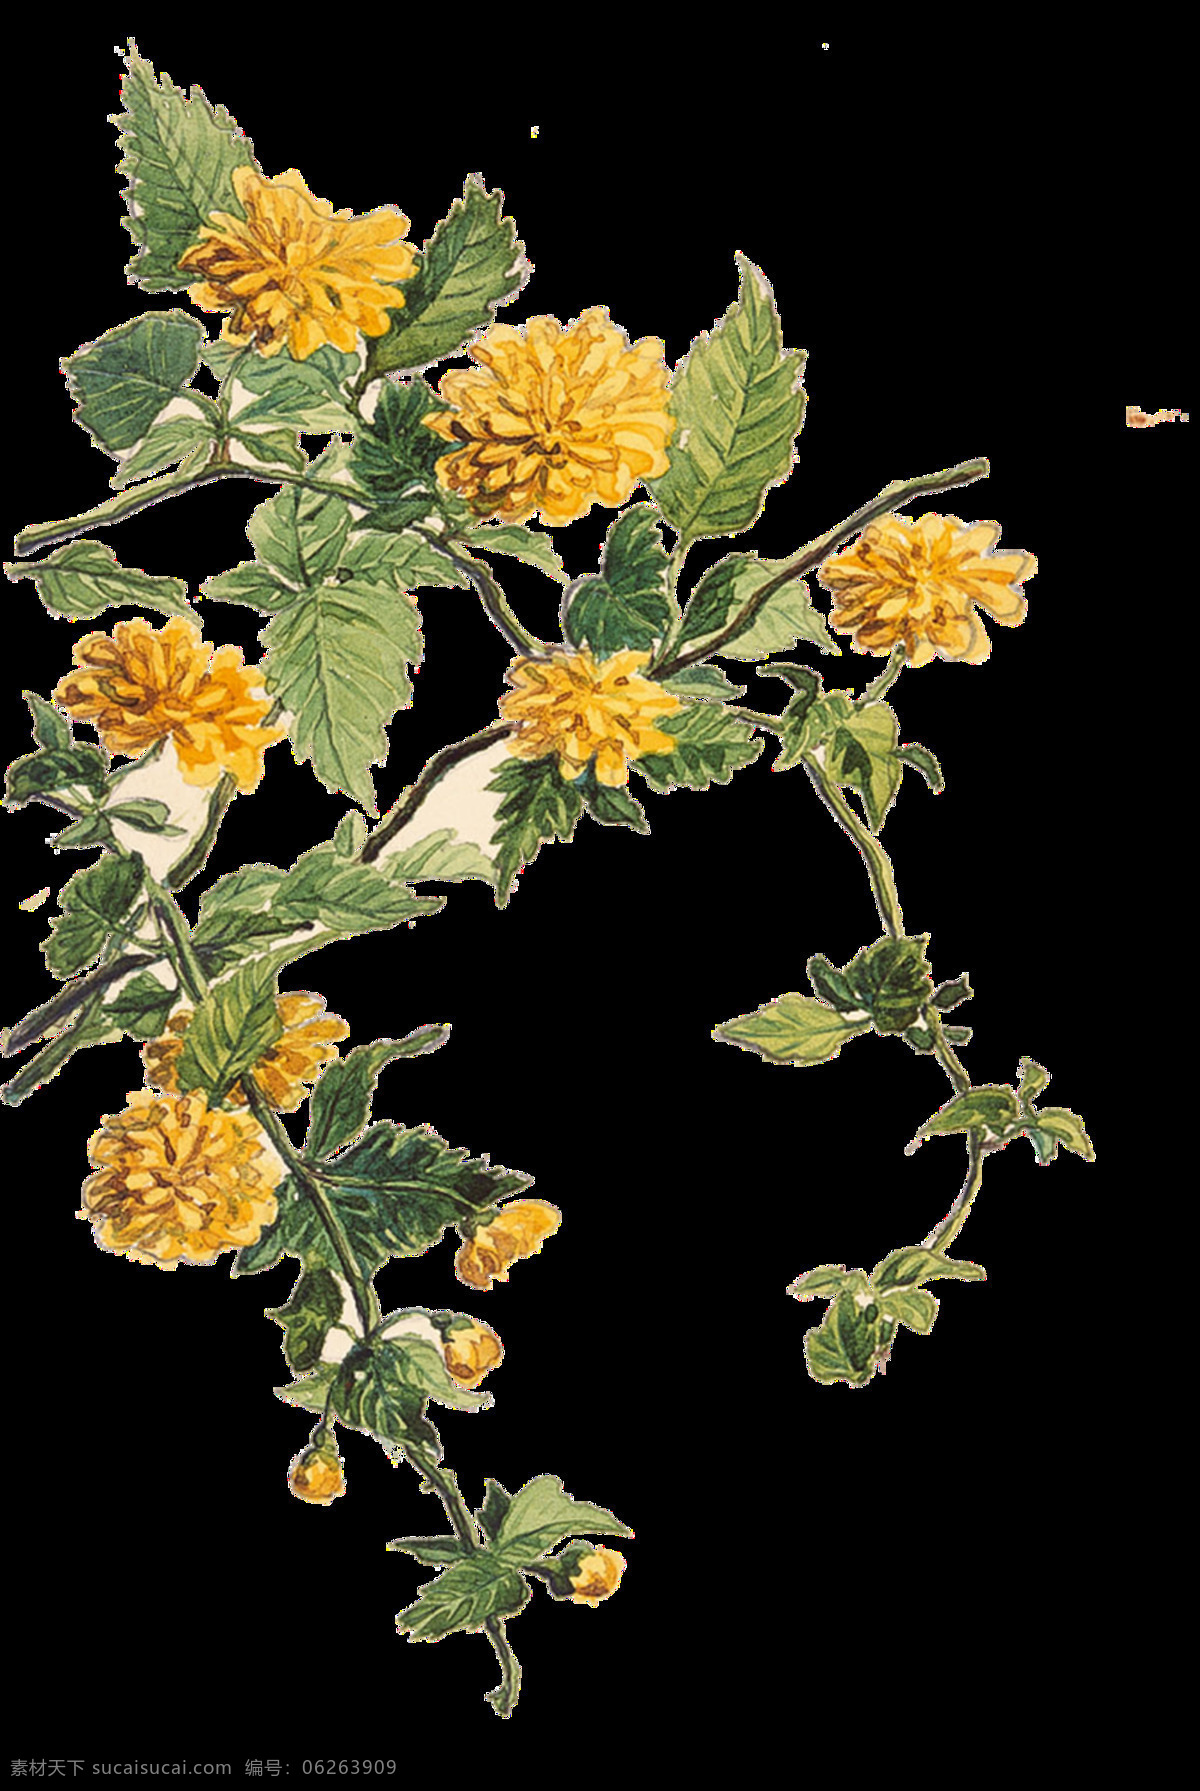 美丽 热情 黄色 手绘 菊花 装饰 元素 黄色花朵 绿植 清新 植物 装饰元素